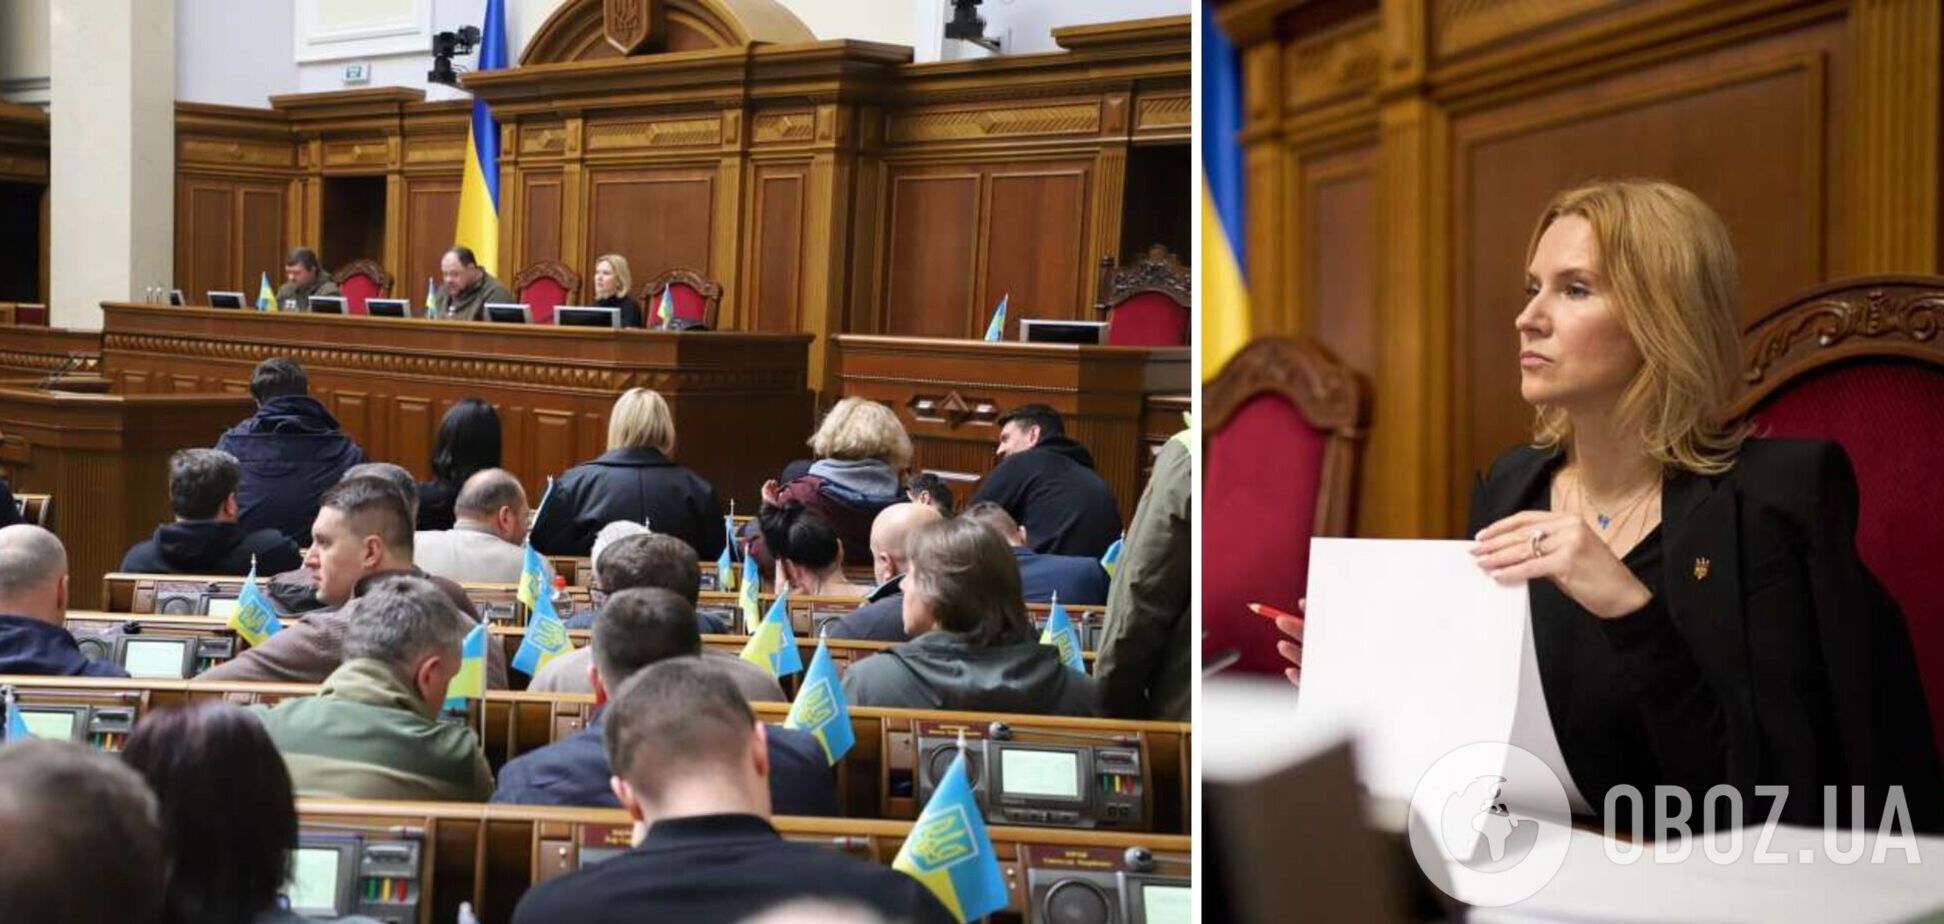 Крок назад заради єдності: віцеспікерка Кондратюк про кризу з відрядженнями депутатів